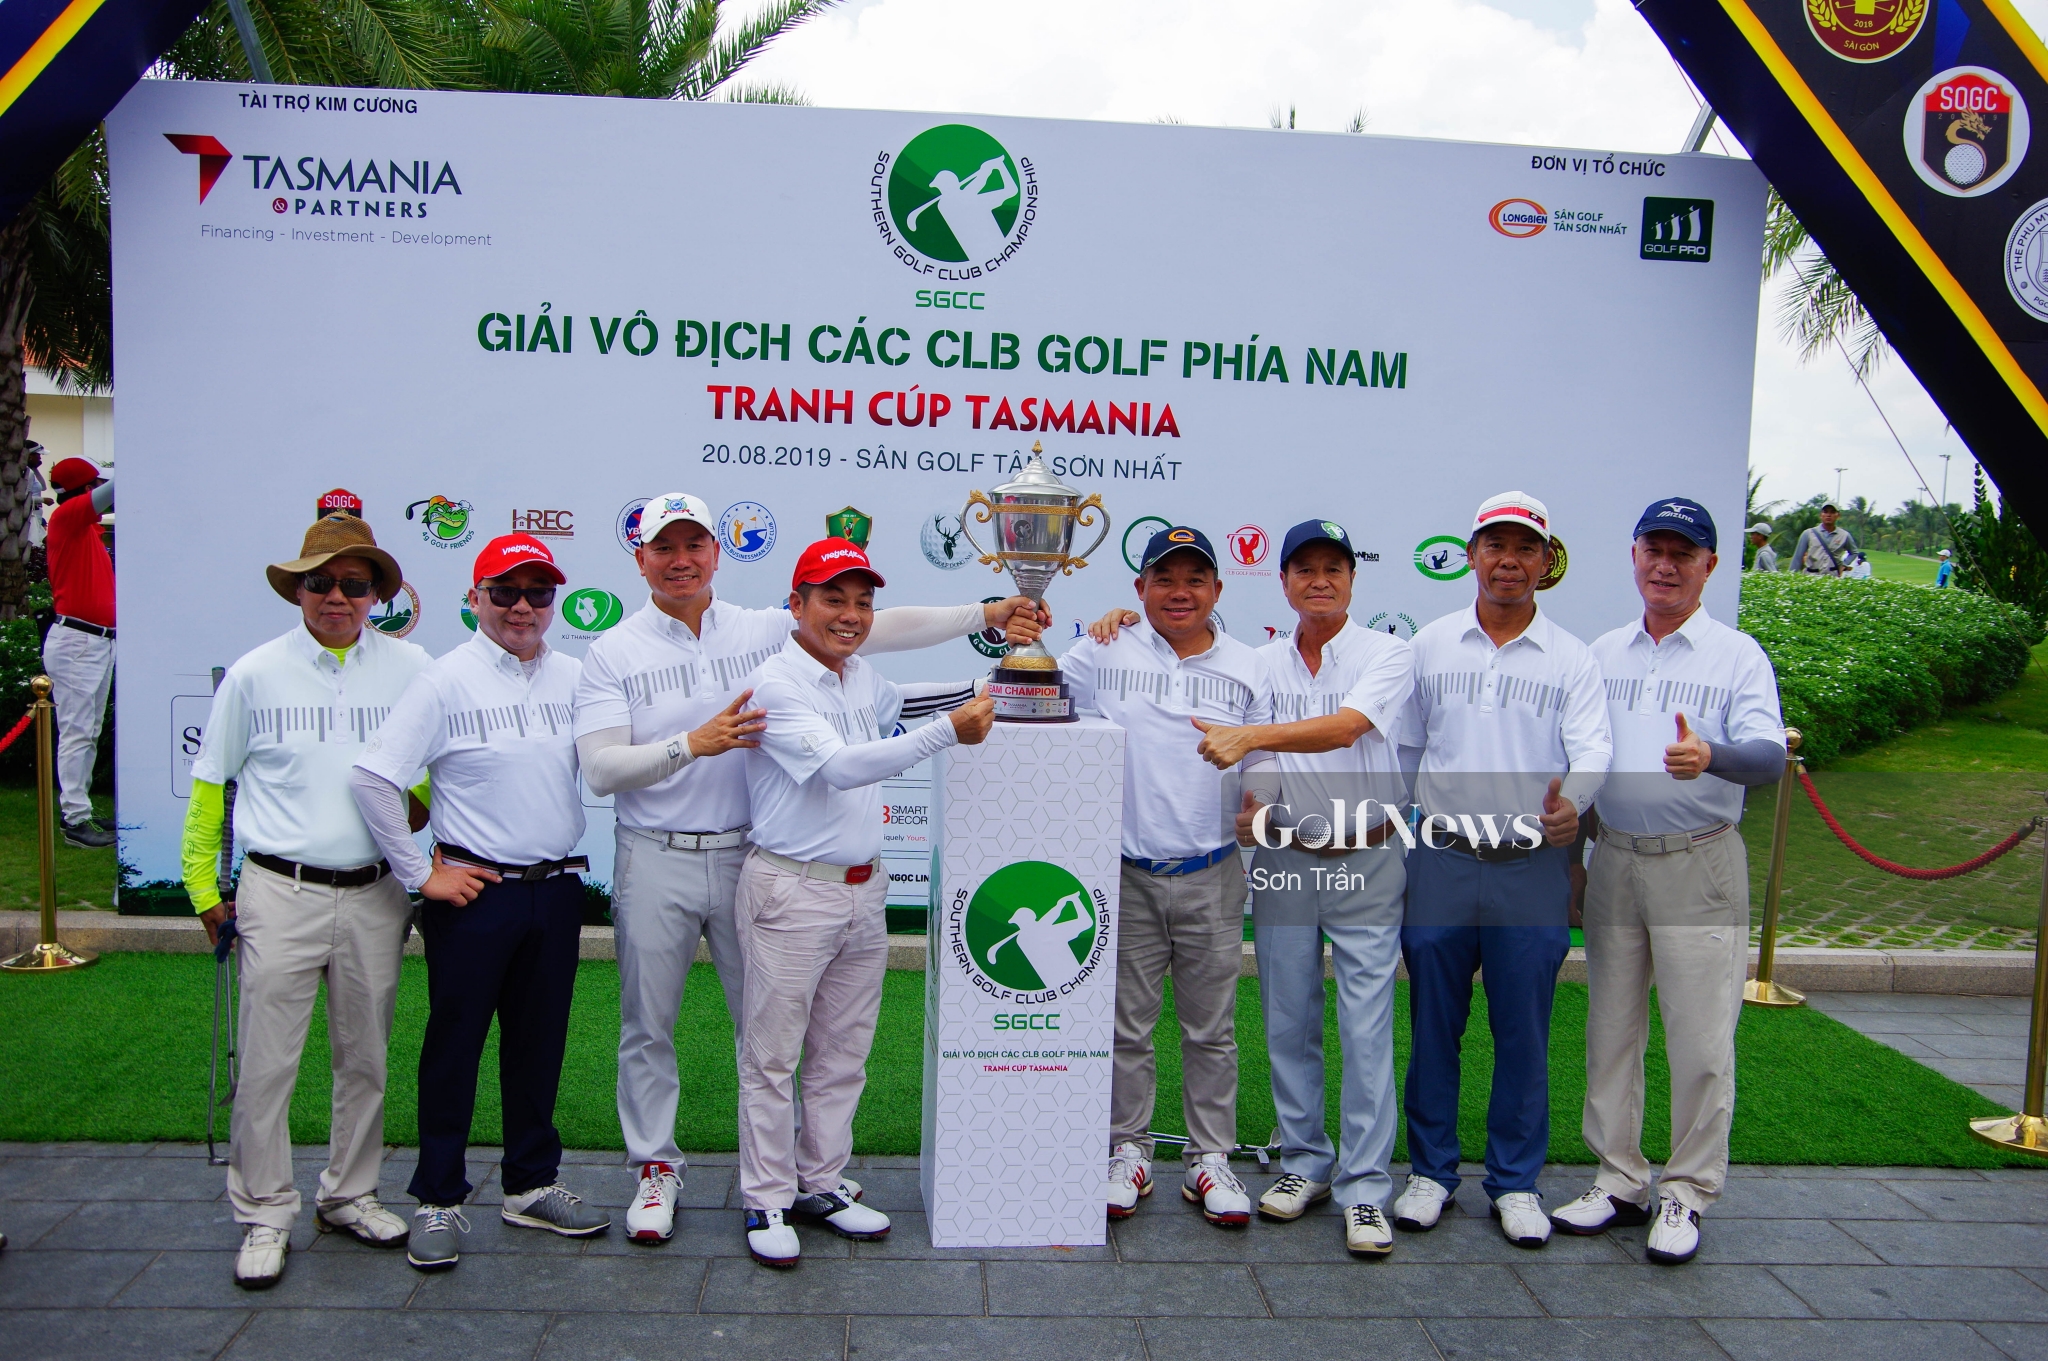 Giải vô địch các CLB Golf phía Nam 2019: Nơi tôn vinh màu cờ sắc áo CLB